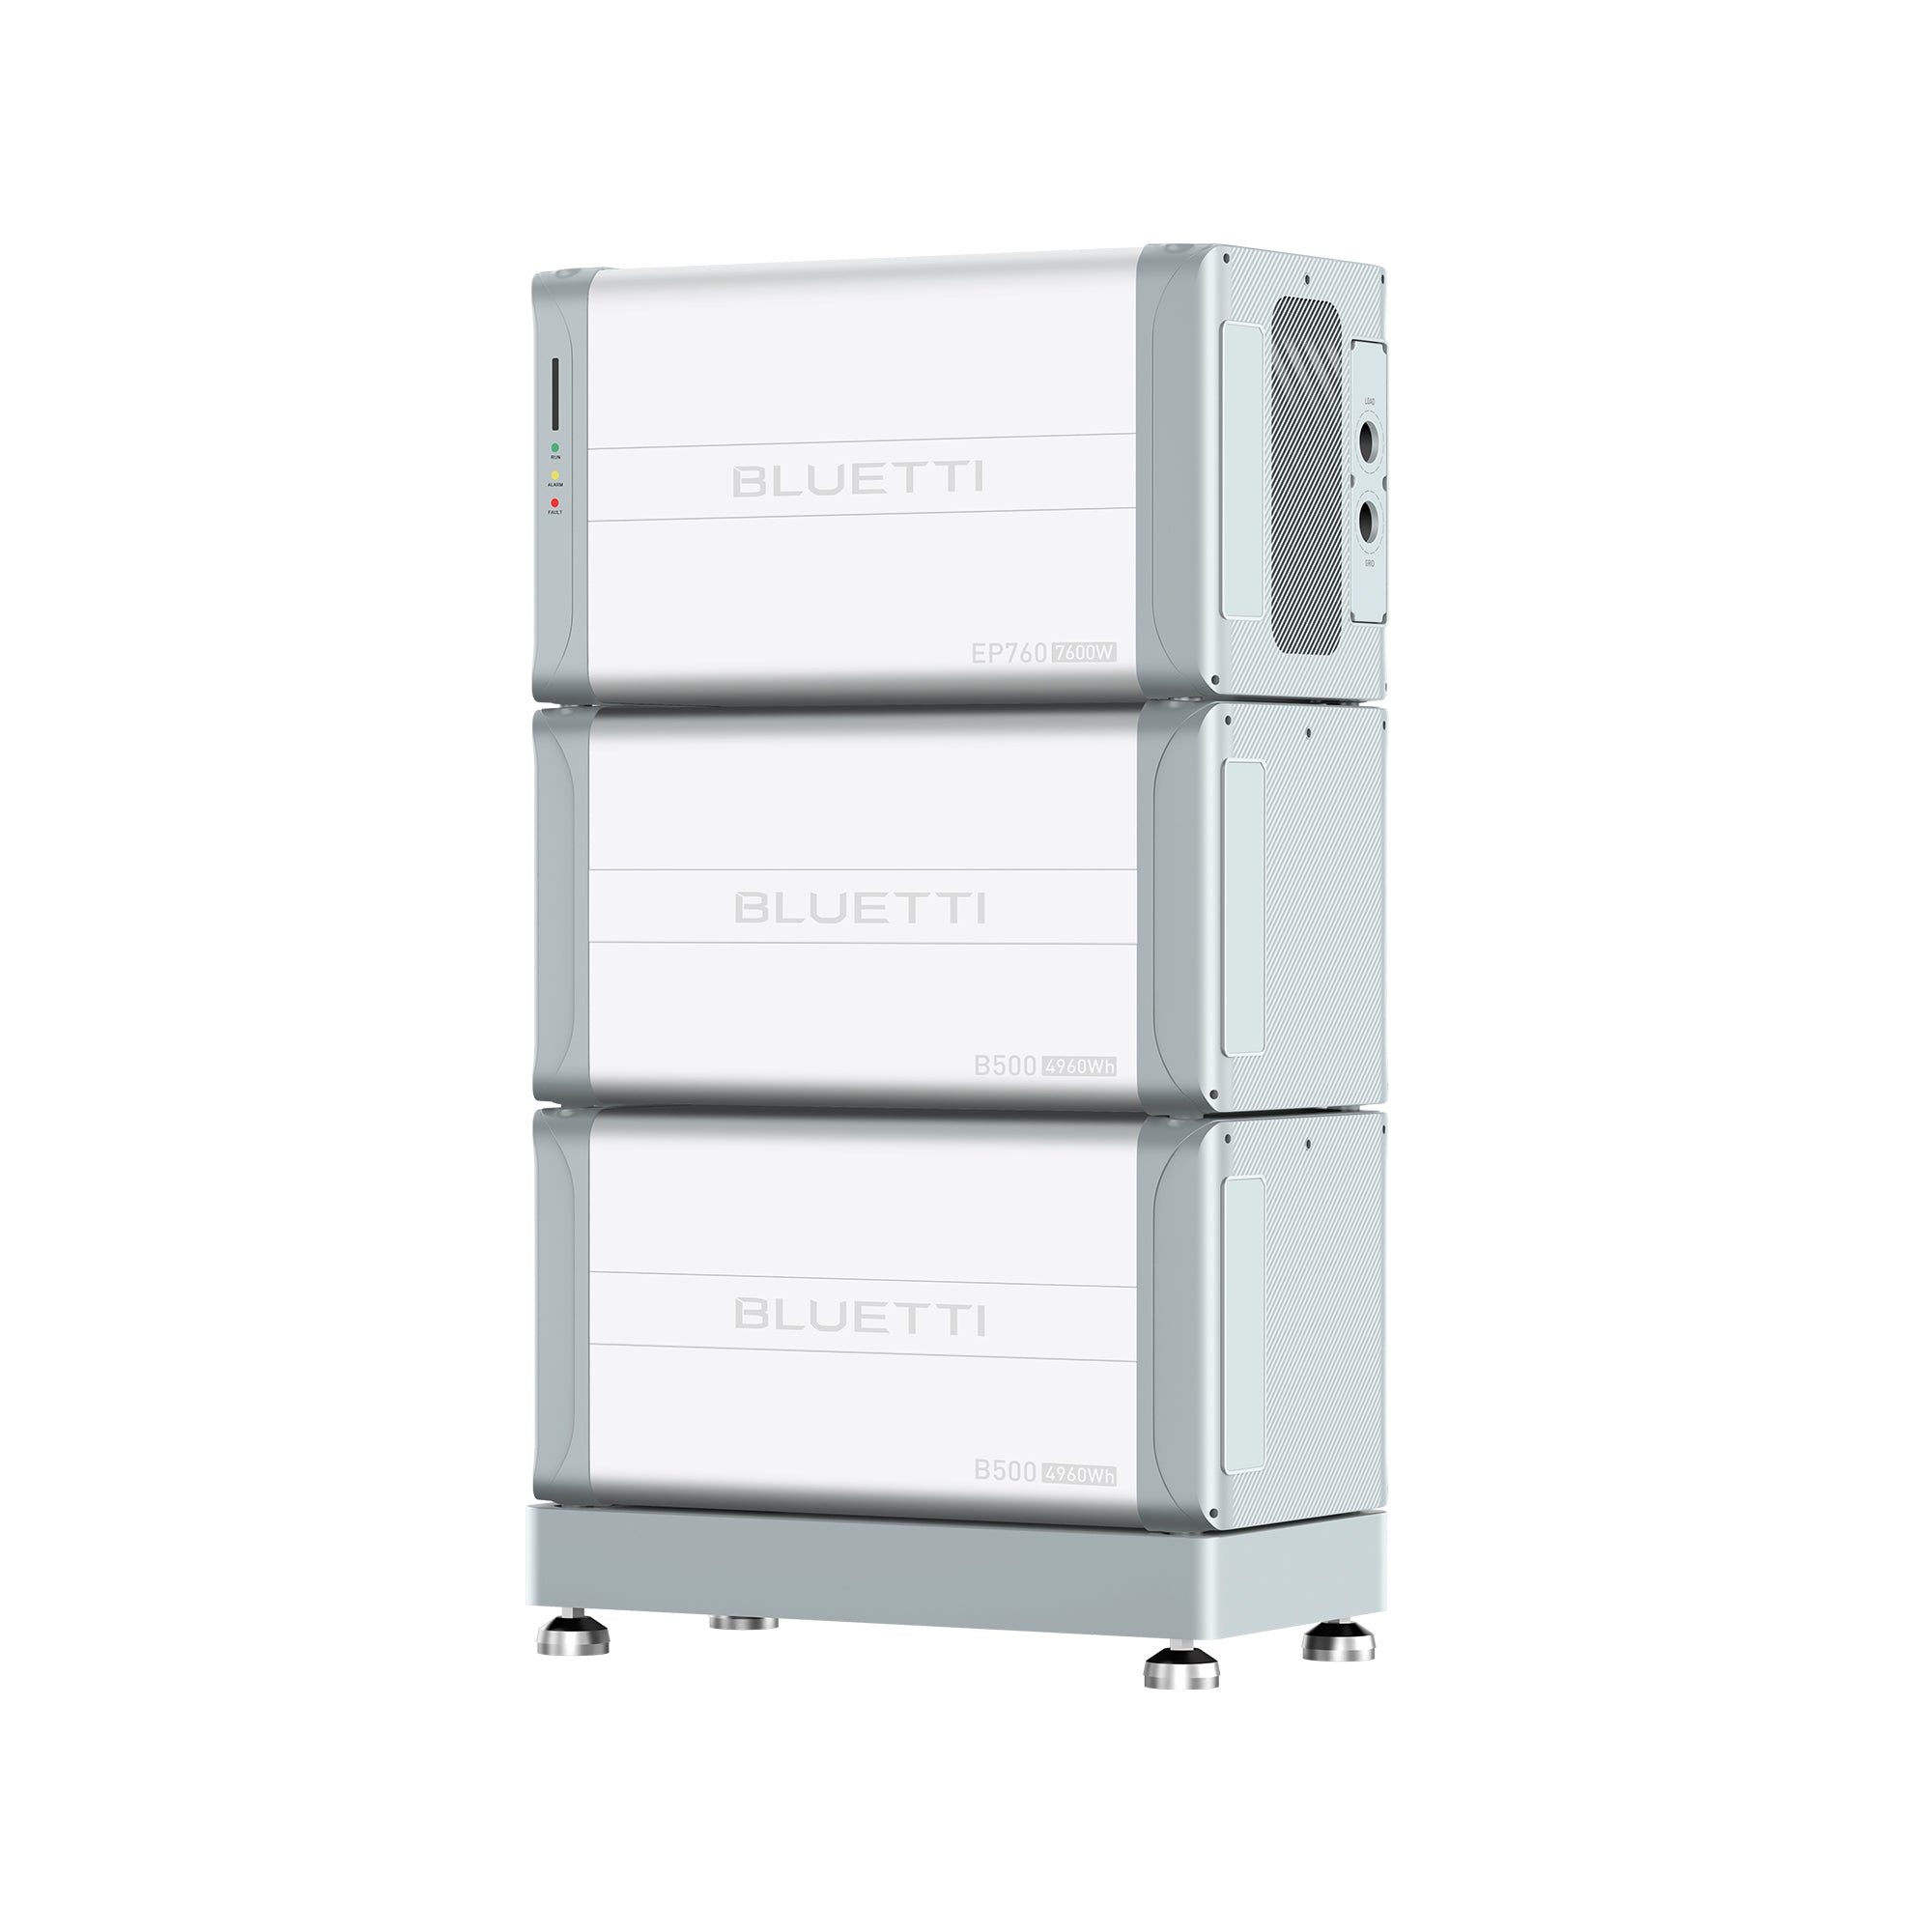 Image of BLUETTI EP760 + B500 Backup della batteria domestica | Fino a 7.600 W di potenza e 19.840 Wh di capacità - BLUETTI IT, EP760 + 2*B500 | 7600 W, 9920 Wh On-grid ESS (Installazione Esclusa)